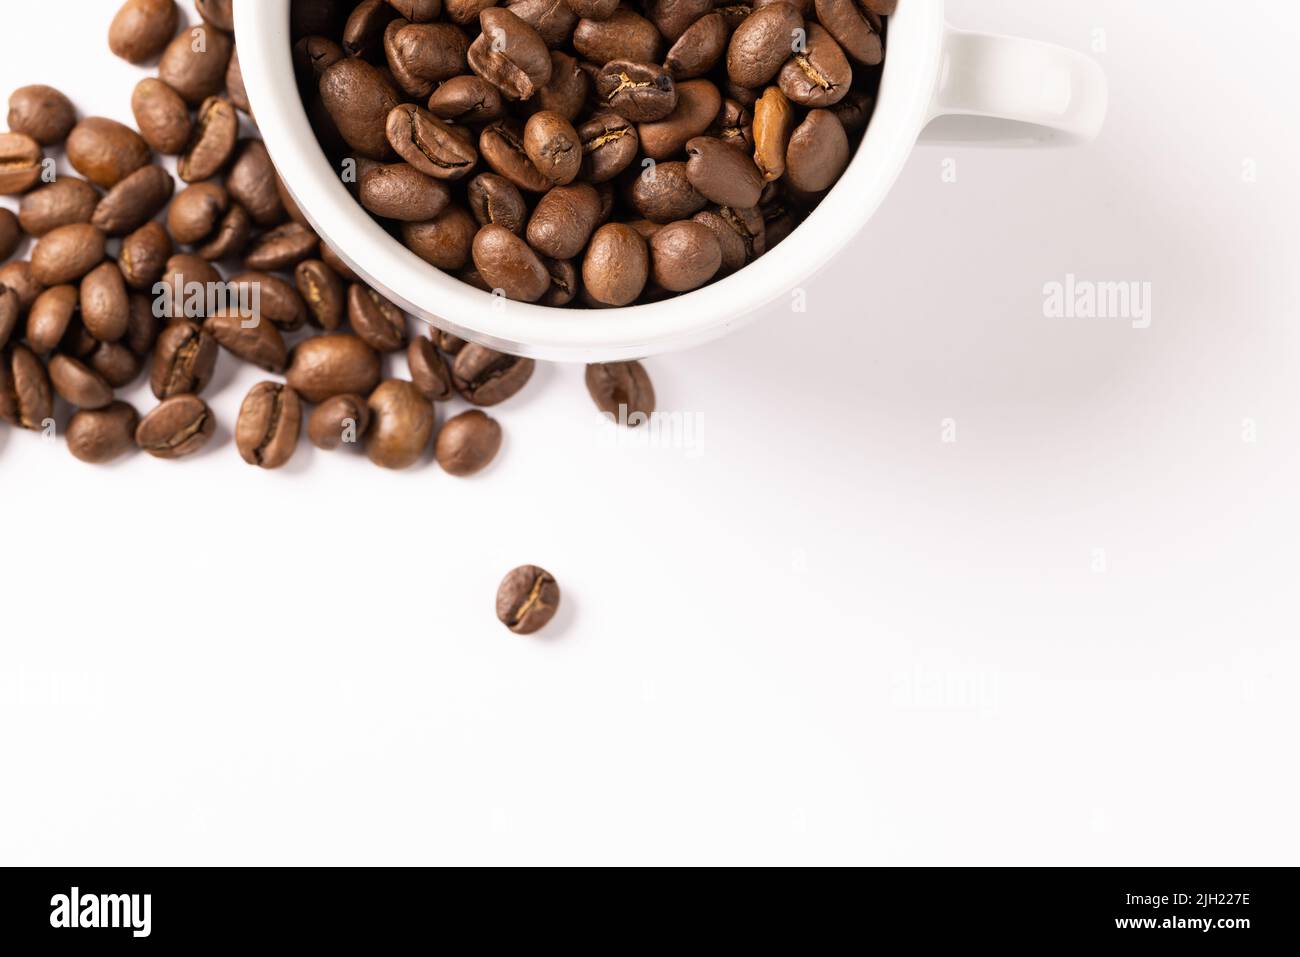 Bild der Pille einer Kaffeebohnen und einer Tasse Kaffeebohnen auf weißem Hintergrund Stockfoto